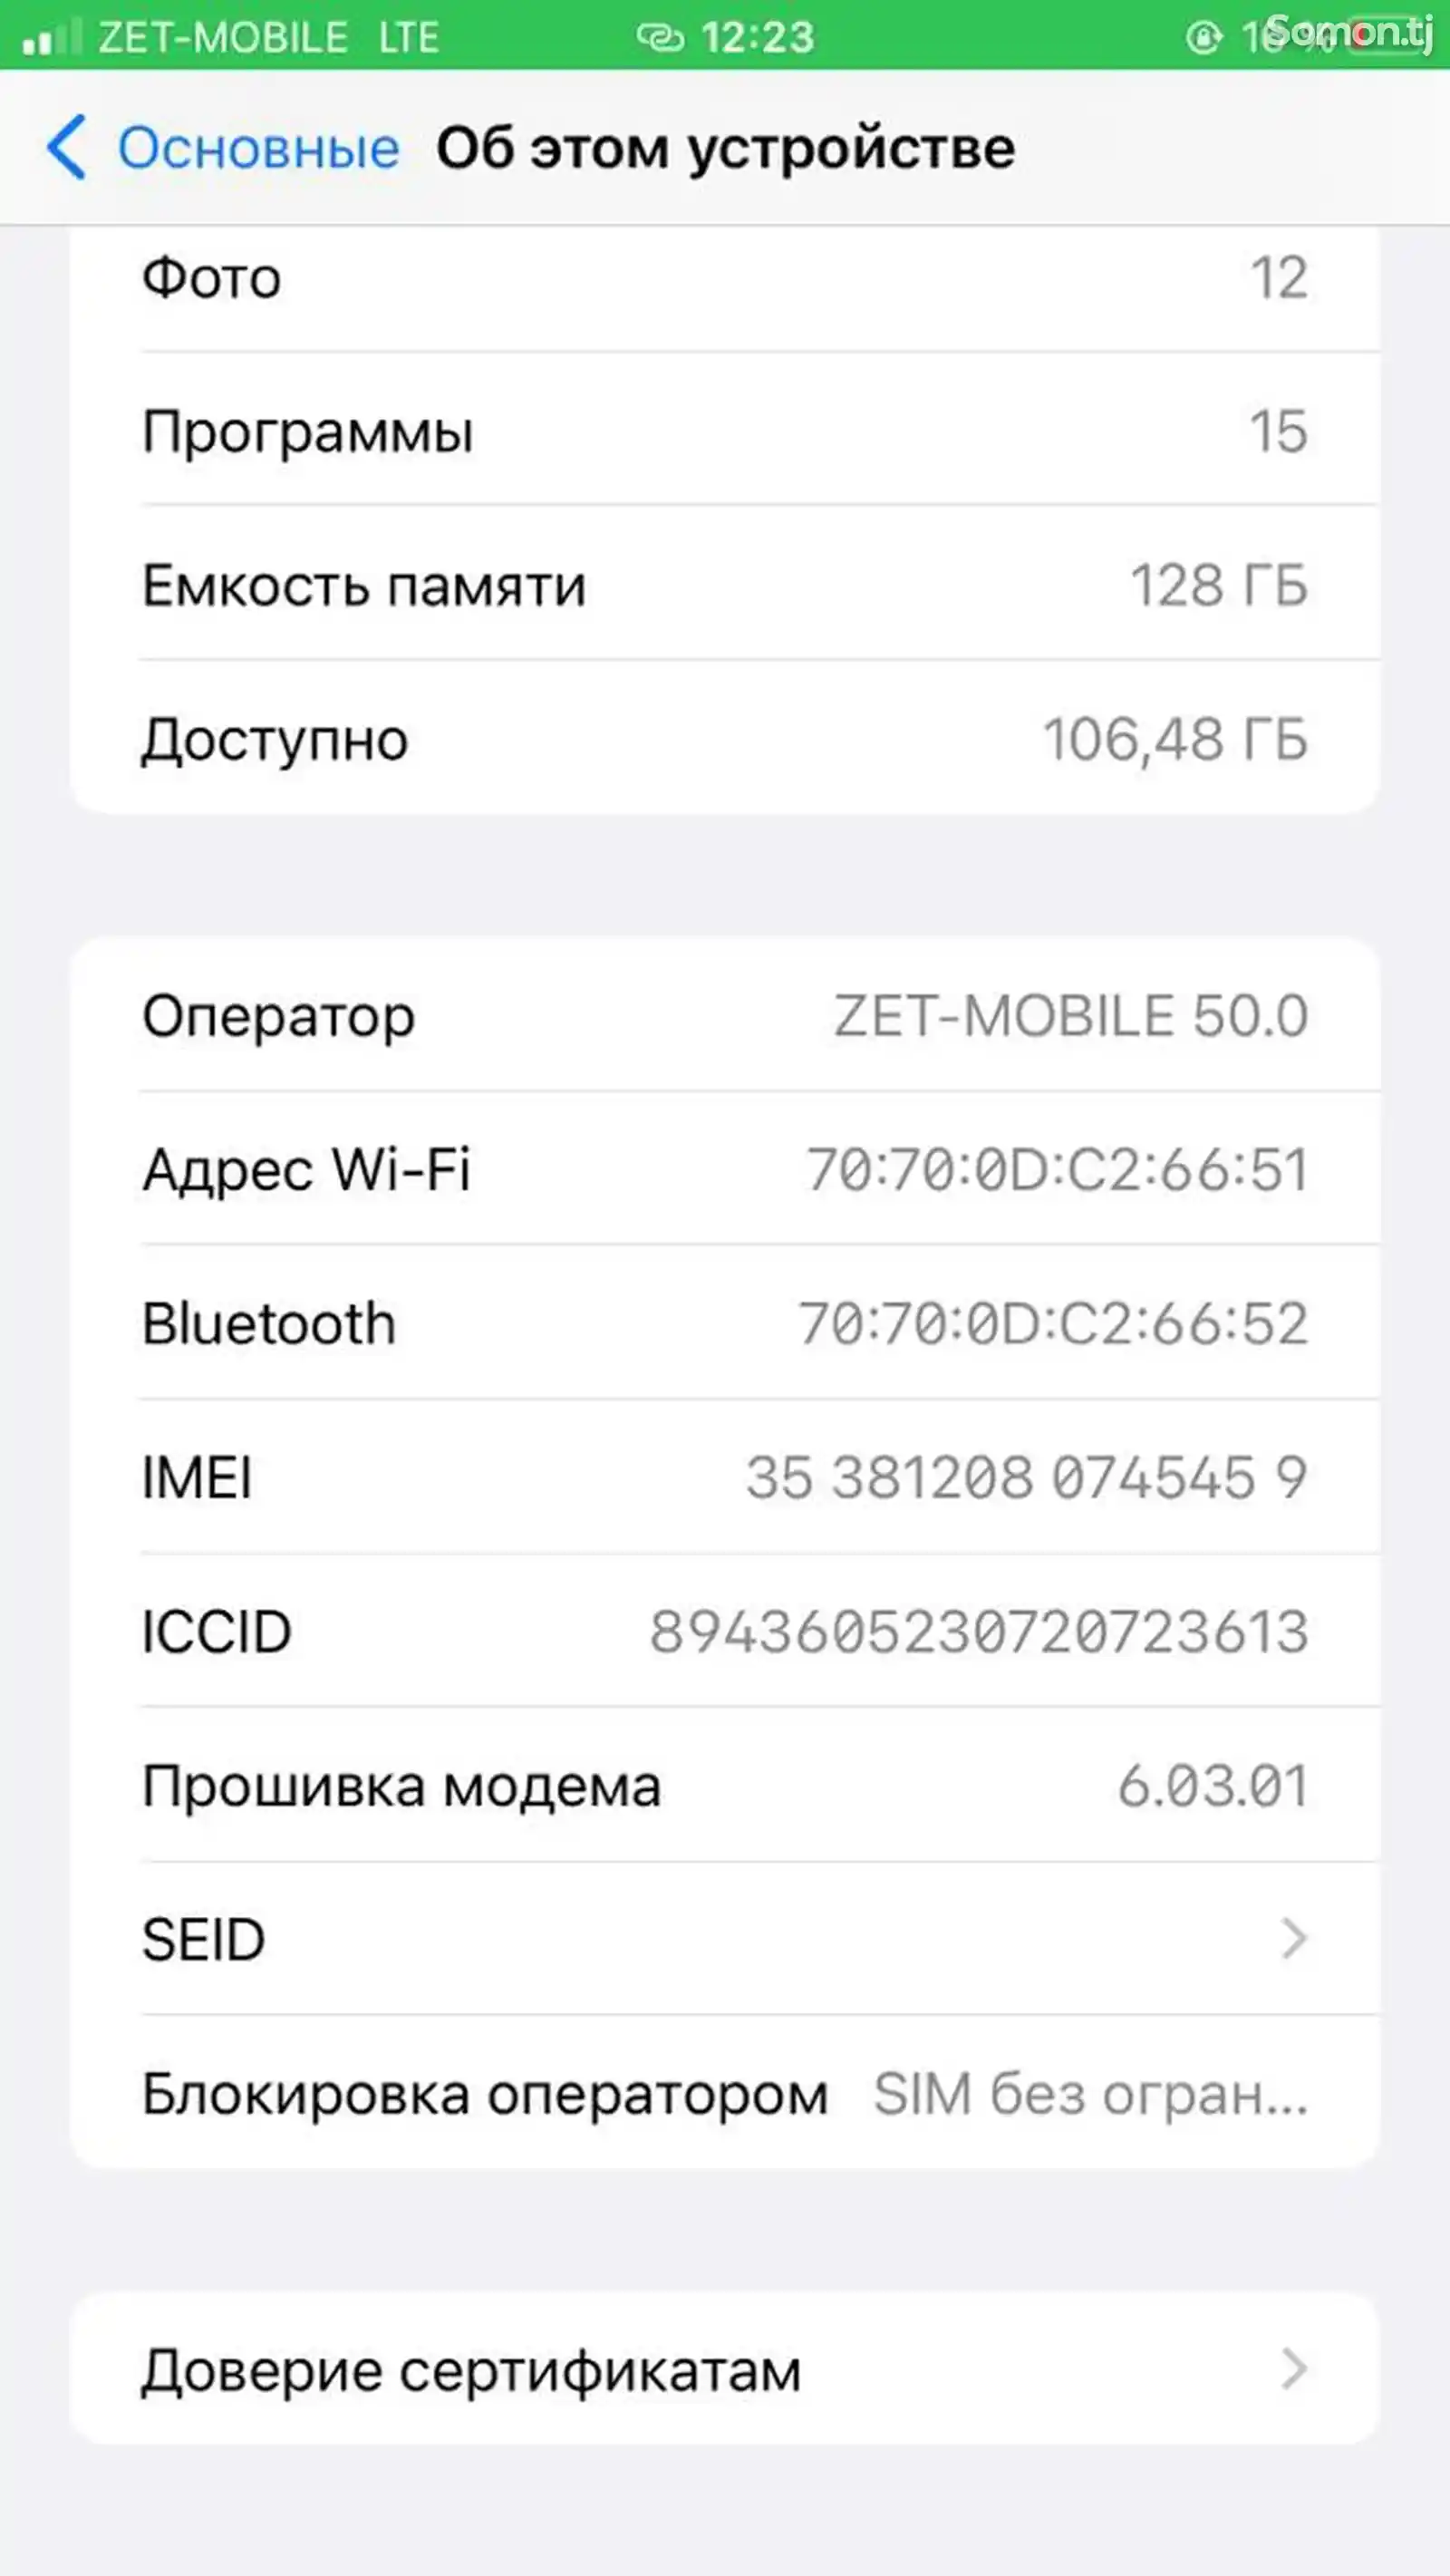 Apple iPhone 7 plus, 128 gb-3